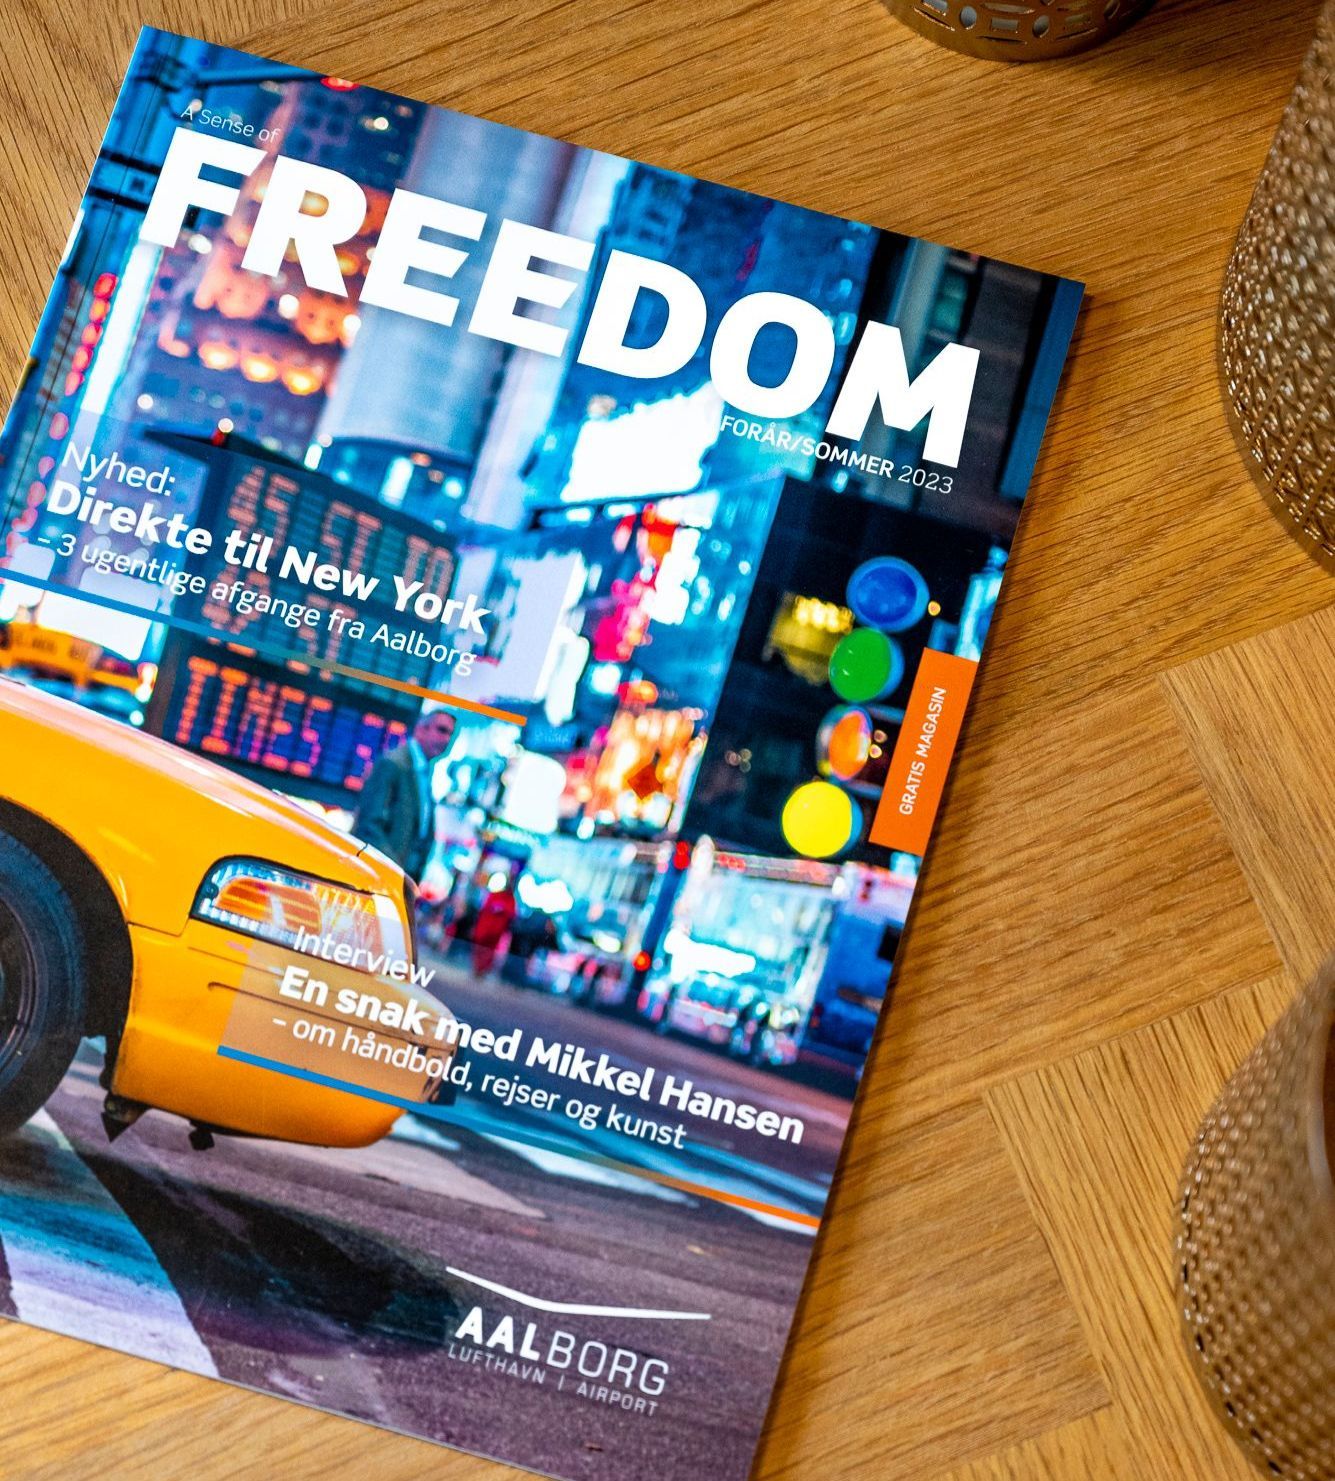 Magasinet FREEDOM med en gul taxa fra New York på forsiden